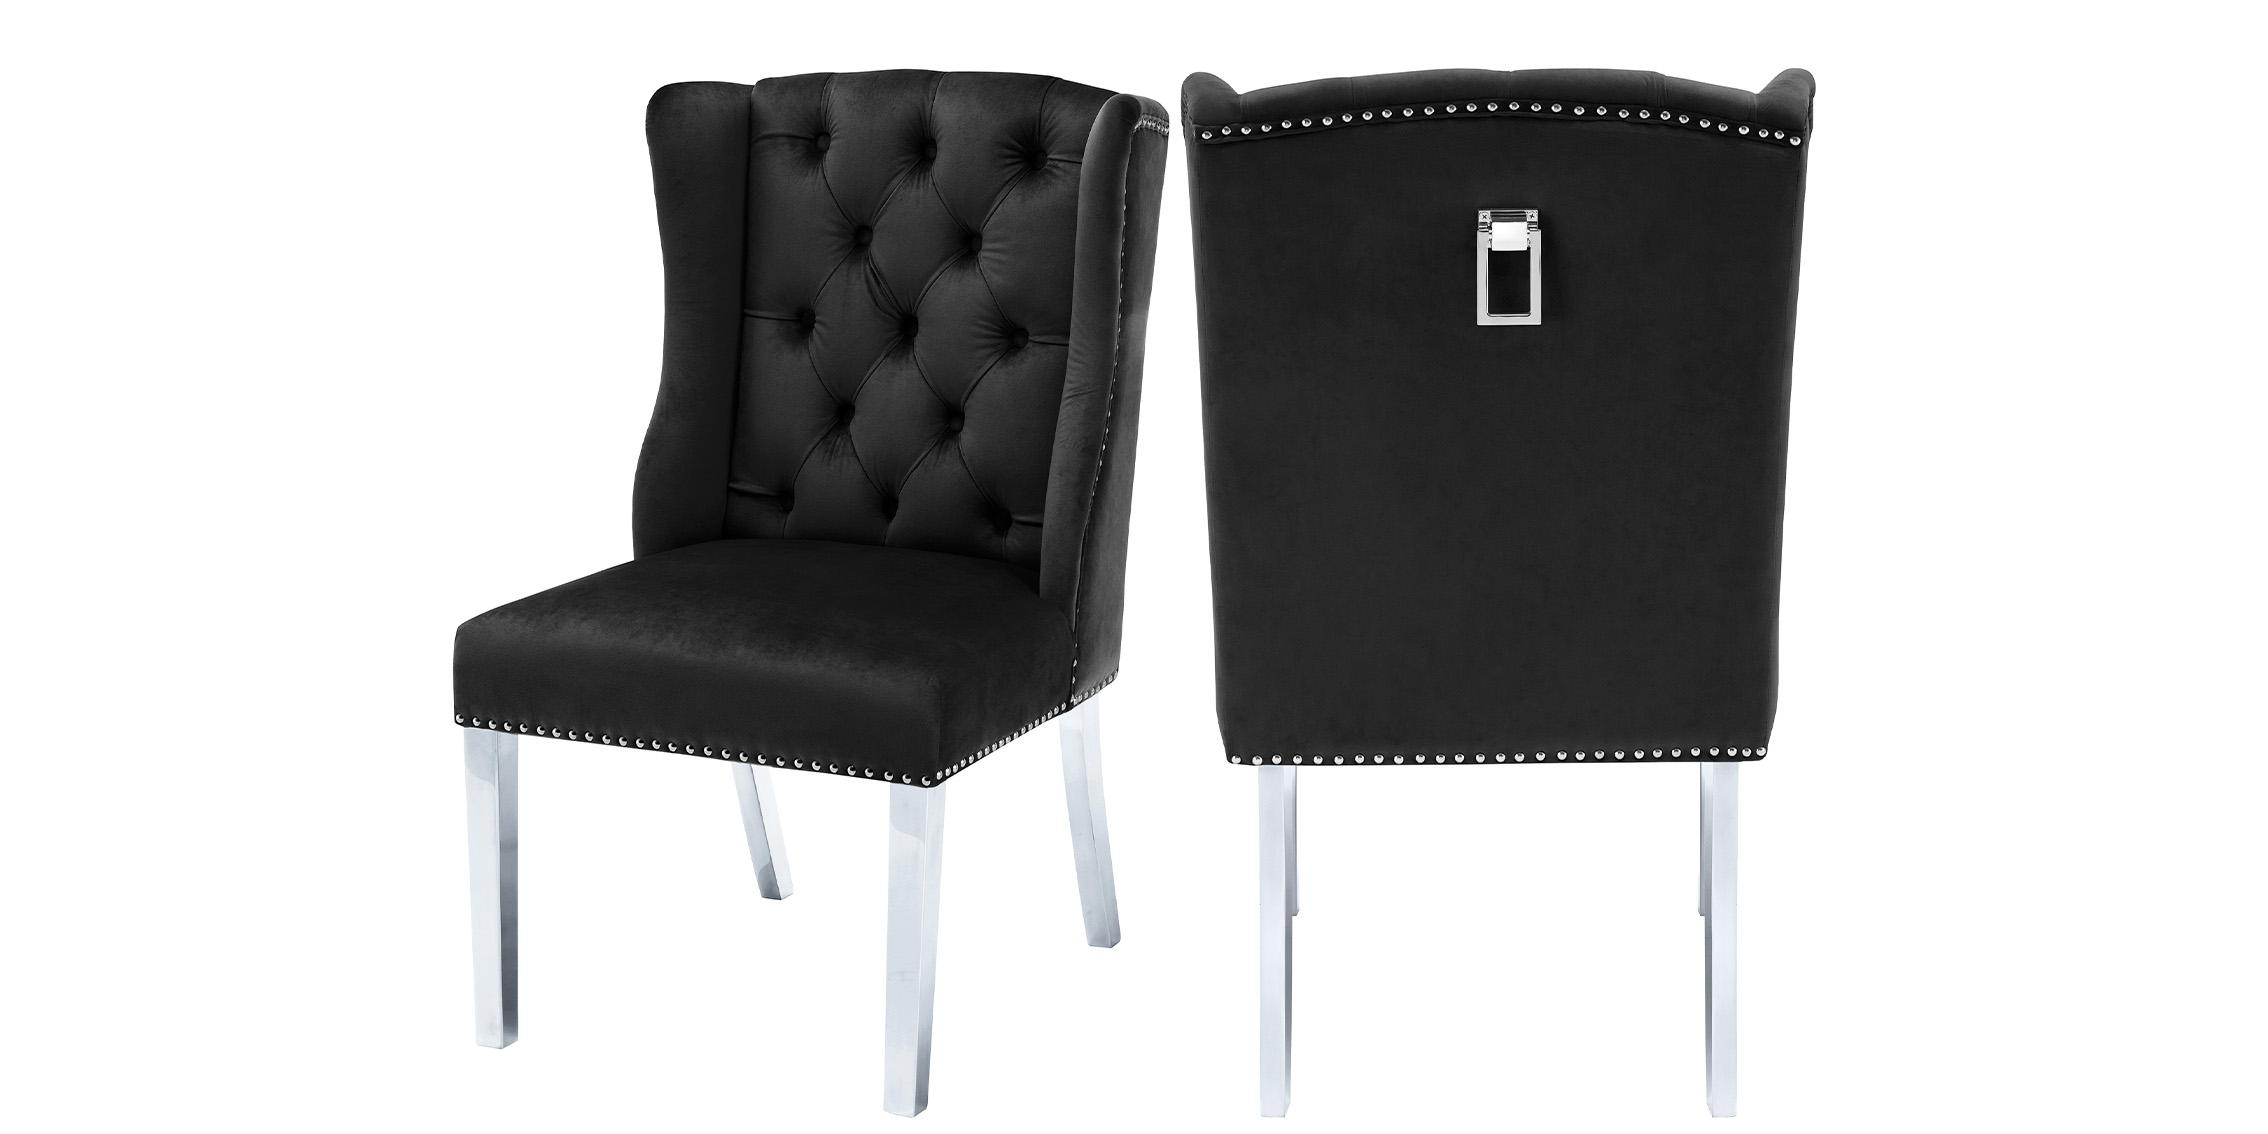 Contemporary Dining Chair Set SURI 809Black-C 809Black-C in Black Velvet